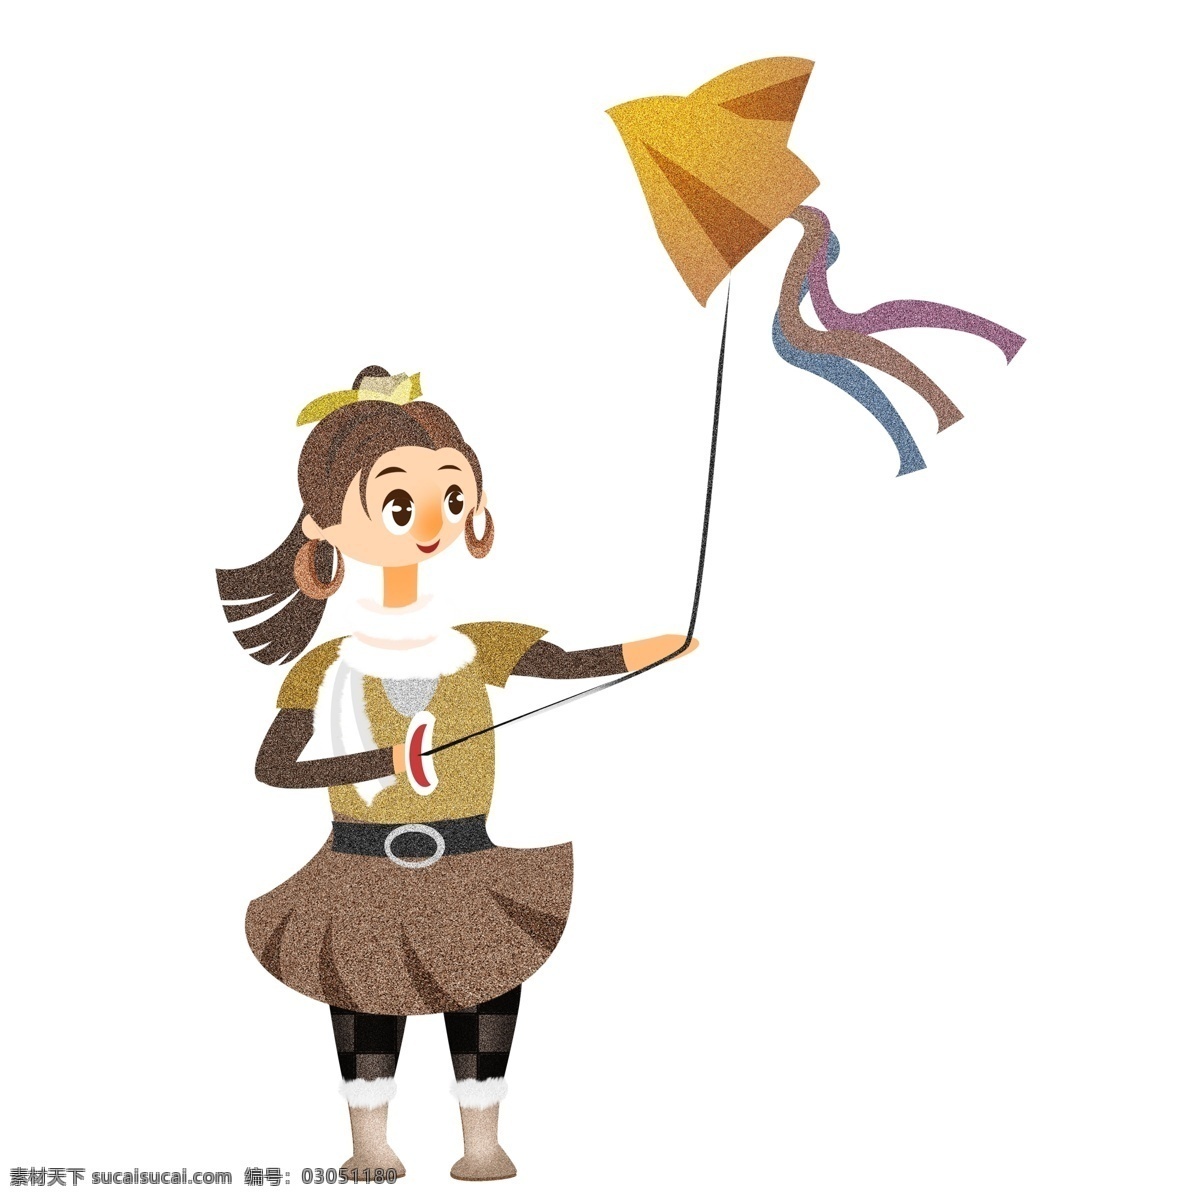 冬季 放风筝 女孩 手绘 噪 点 卡通 创意 插画 psd设计